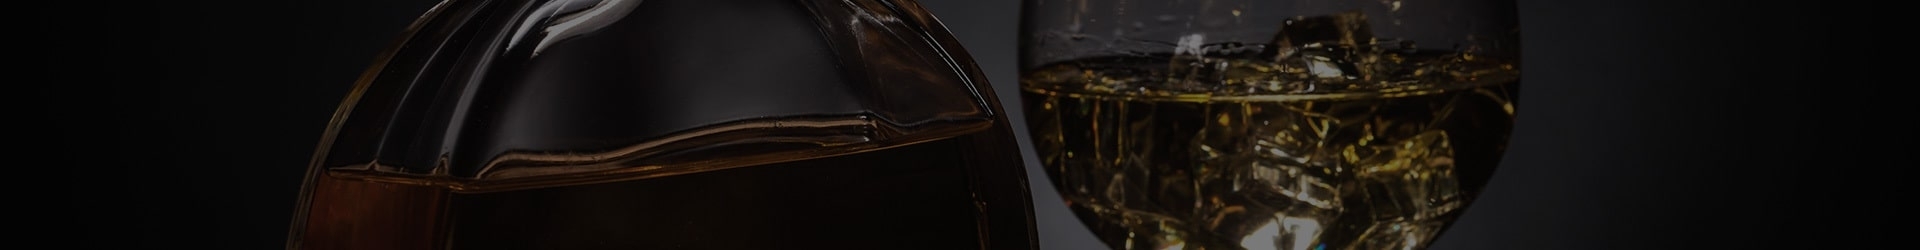 Notre Sélection de Cognac de Bon Goût|Magasiner en ligne